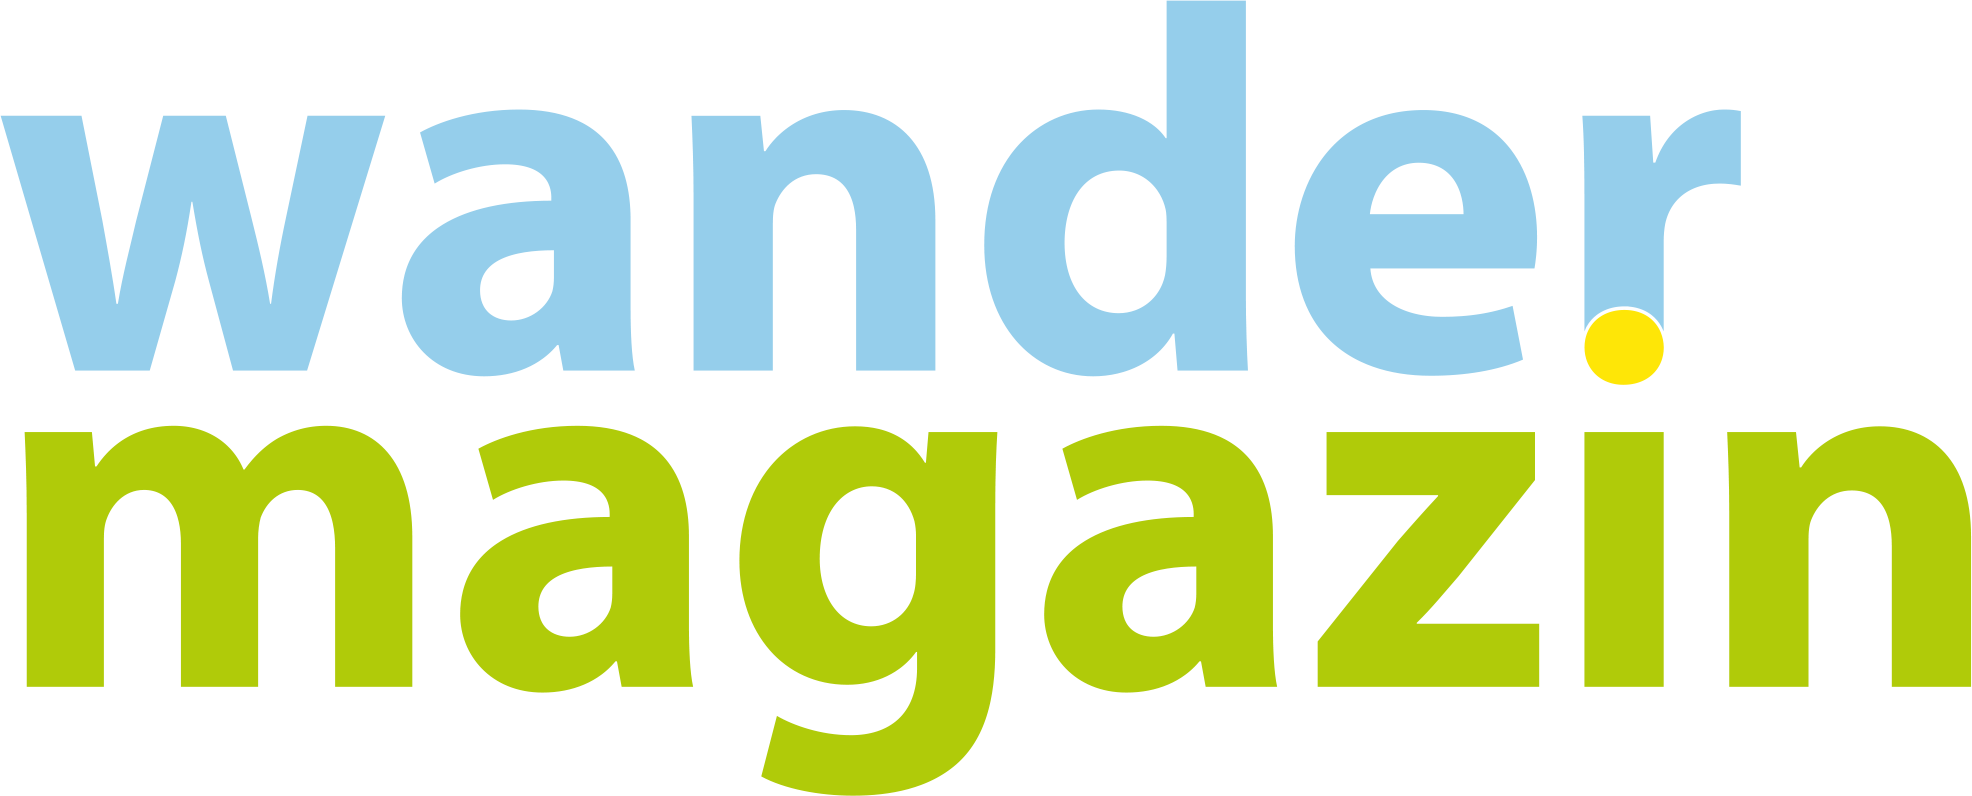 WanderMagazine - brand picture